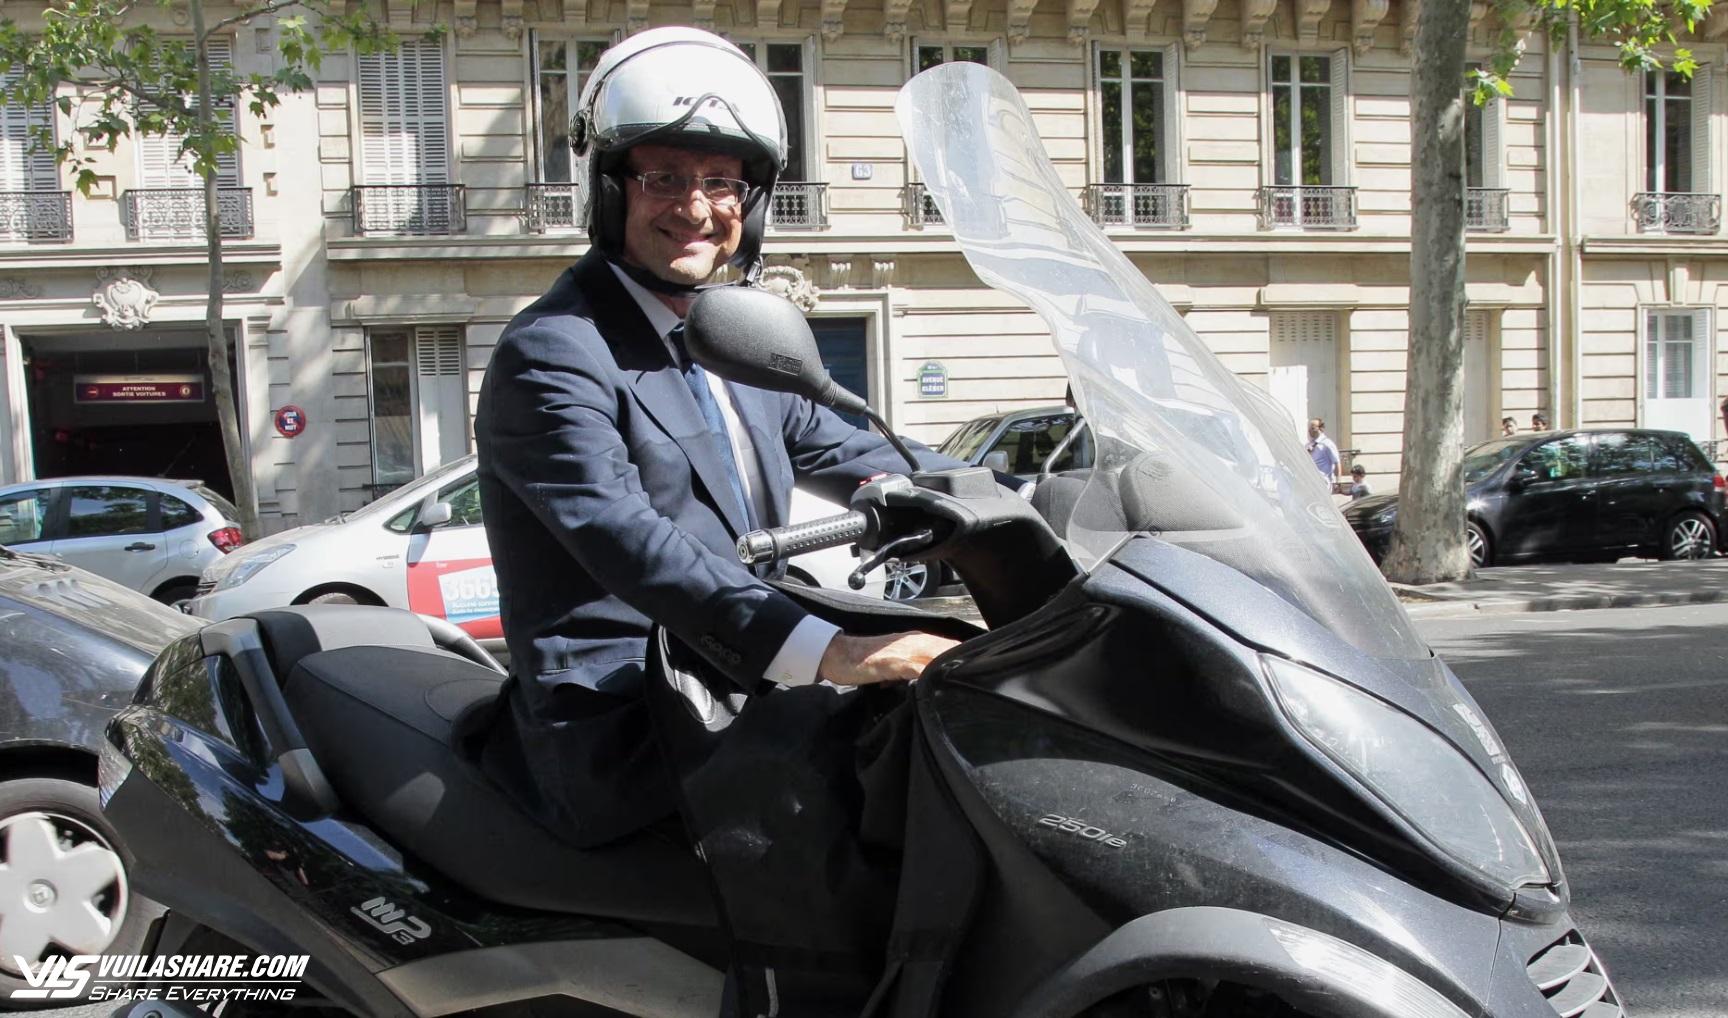 'Xe máy tình yêu' trong vụ ngoại tình của cựu Tổng thống Pháp có chủ mới- Ảnh 1.